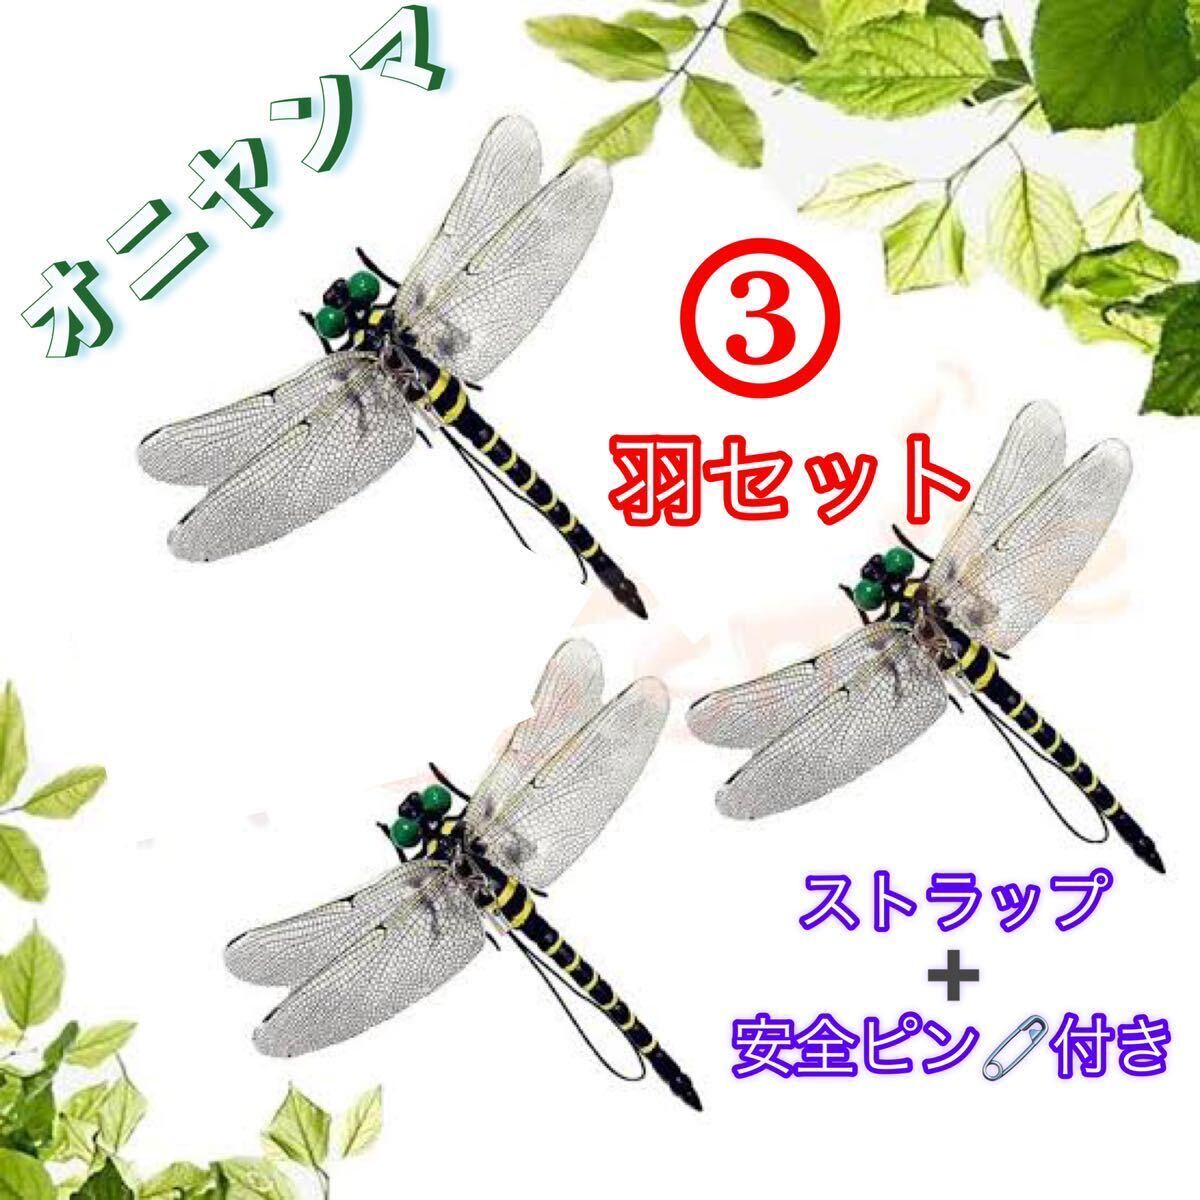  супер-скидка -oniyama стрекоза безопасность булавка имеется насекомое животное репеллент ....... модель дом игрушка PVC интерьер *3 шт 